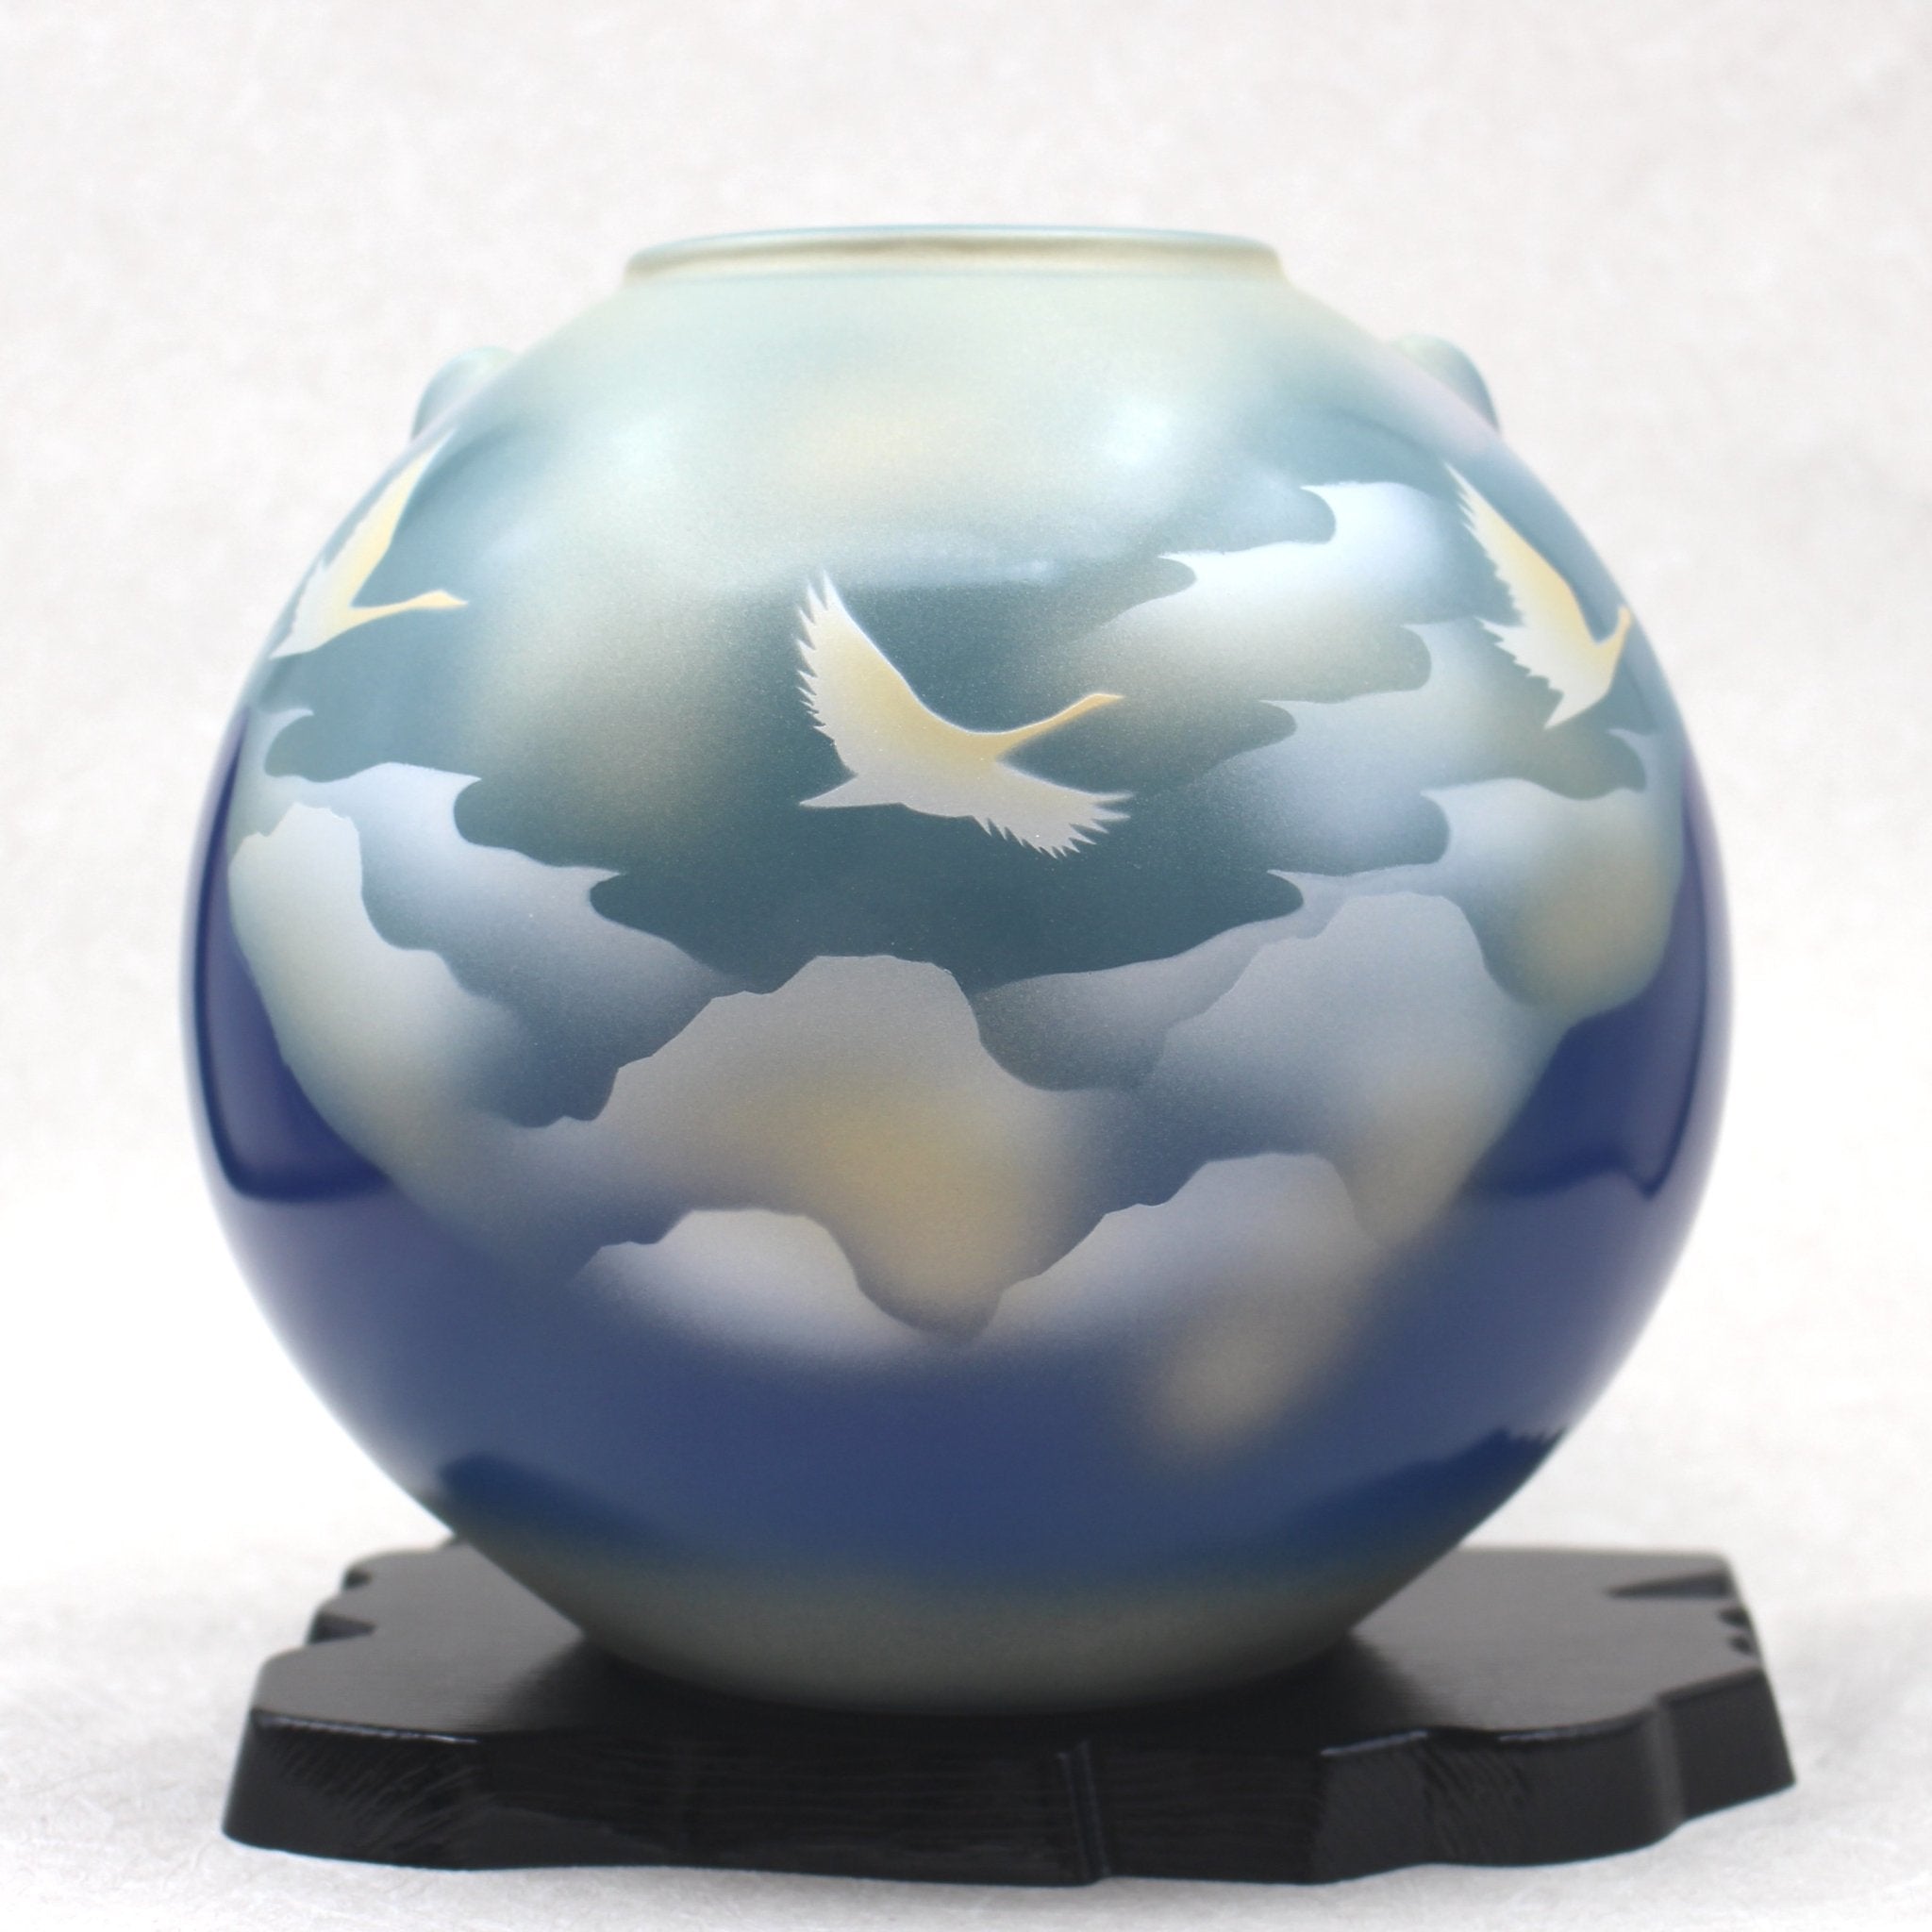 Uniquewise Contemporary Ceramic Marble Look Design Table Vase